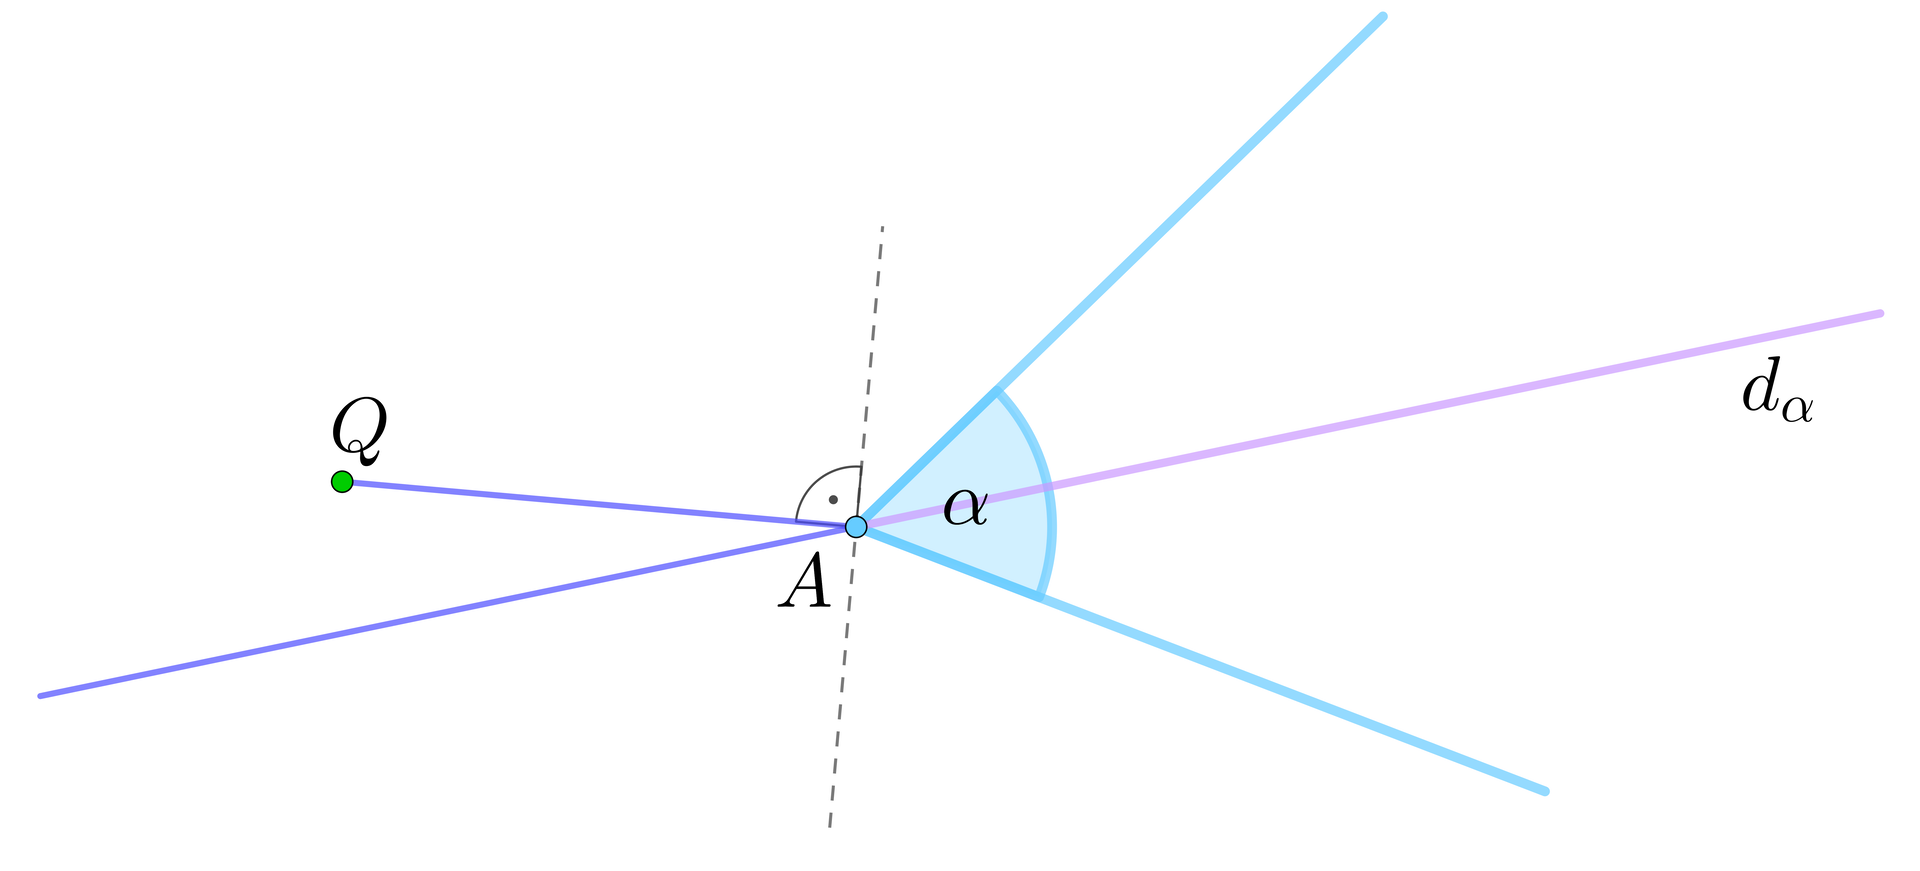 Rysunek przedstawia ukośną prostą, na której zaznaczono punkt A będący wierzchołkiem kąta ostrego α, którego ramiona biegną w prawej części rysunku. Część prostej od wierzchołka kąta w prawą stronę wyróżniono kolorem i opisano jako dwusieczna kąta, czyli dα. Po lewej stronie nad prostą zaznaczono punkt Q i poprowadzono od niego odcinek do punktu A. Przez wierzchołek kąta poprowadzono ukośną linię przerywaną. Zaznaczono kąt prosty między odcinkiem QA a linią przerywaną.